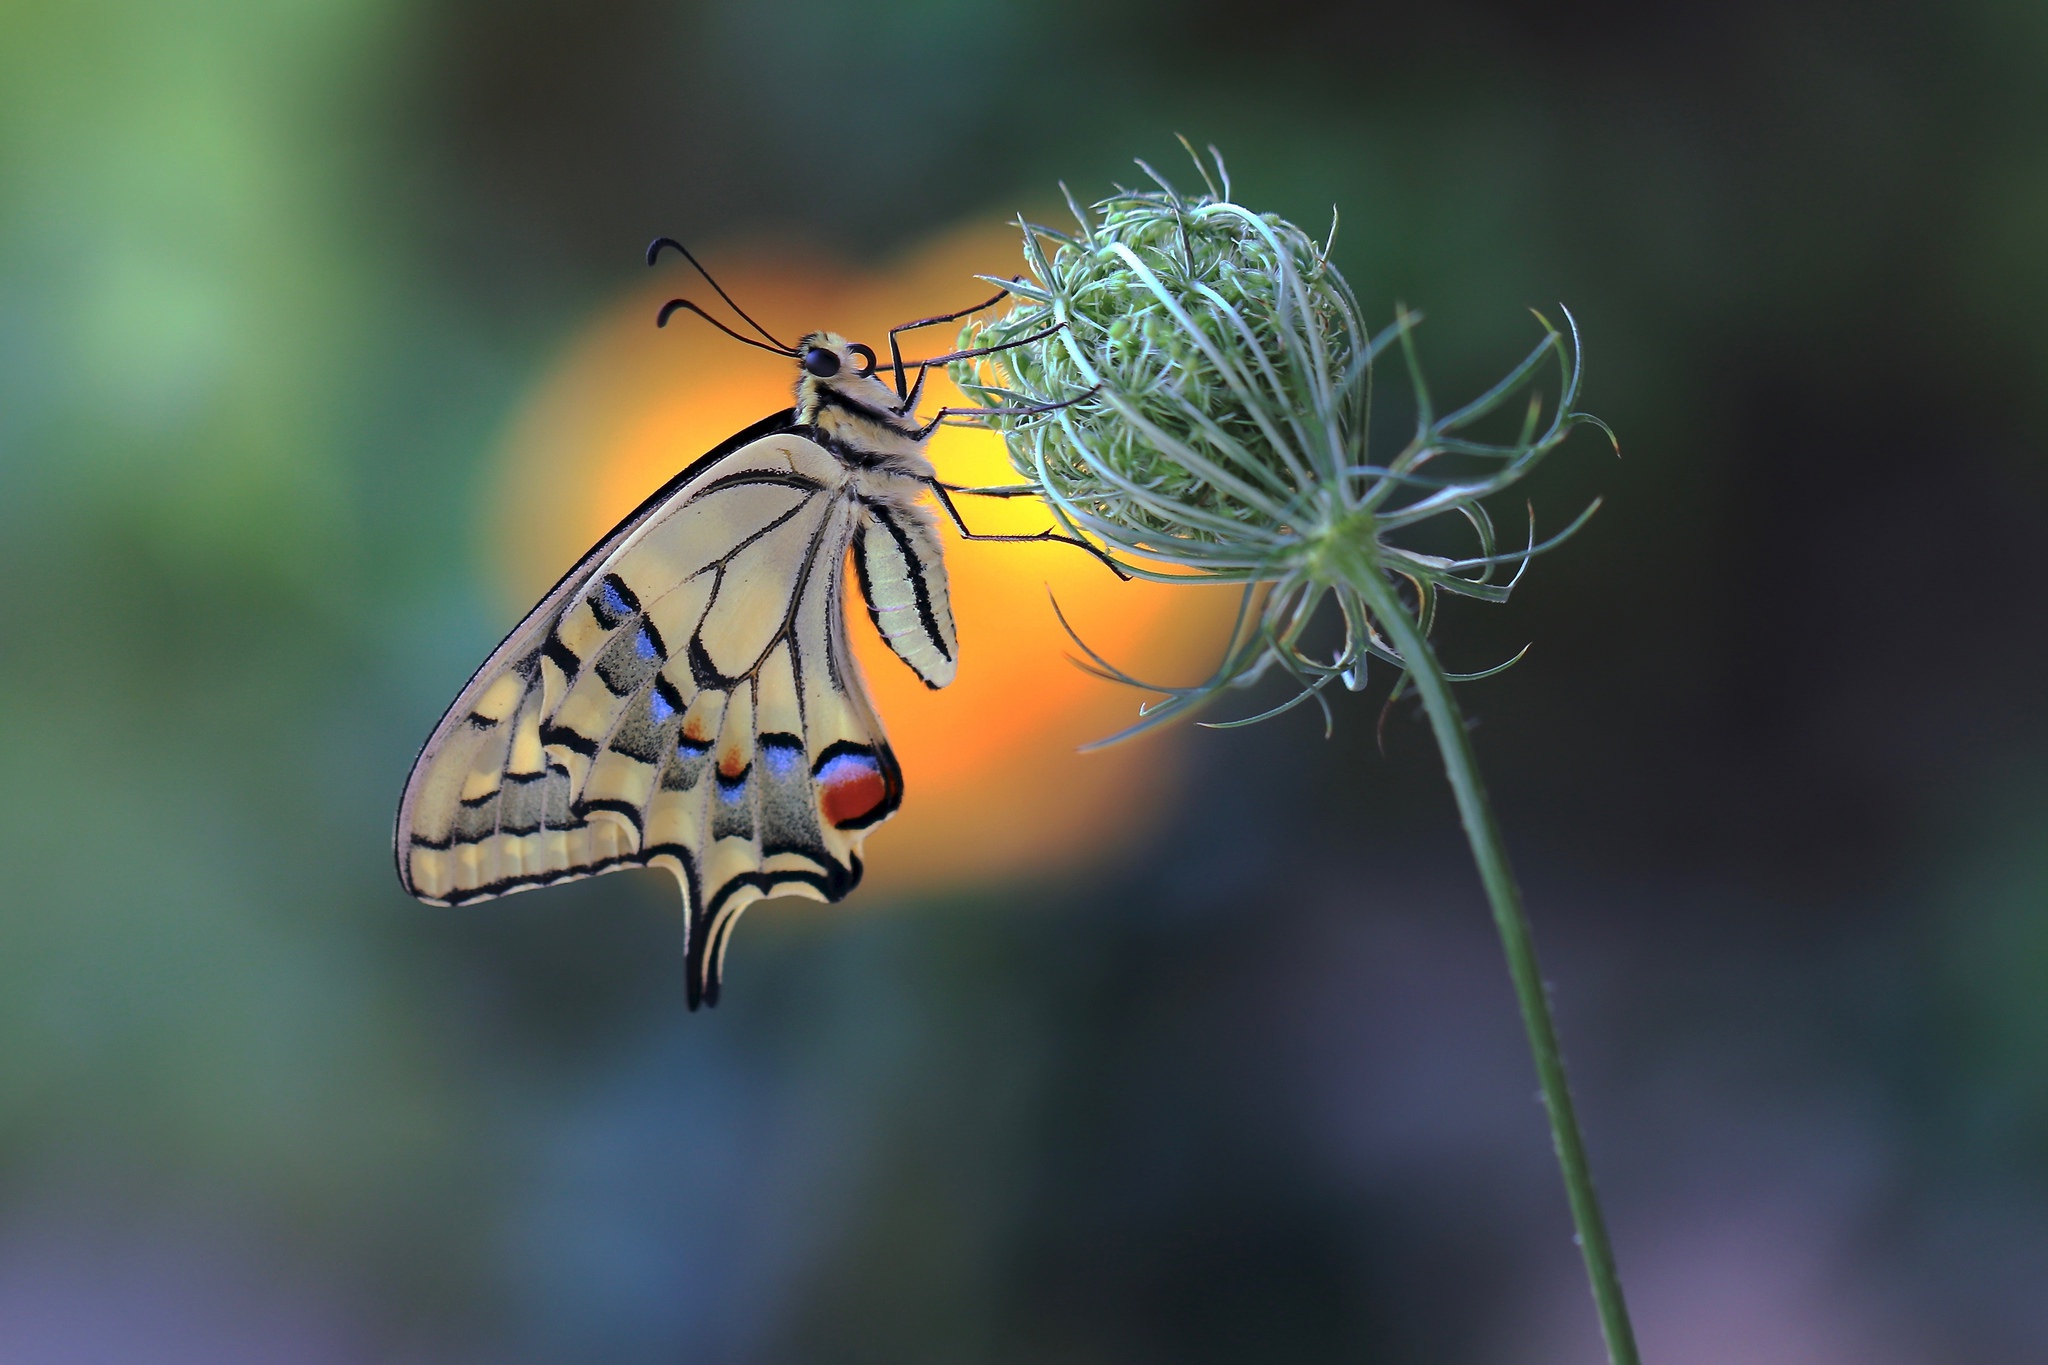 Descarga gratuita de fondo de pantalla para móvil de Animales, Insecto, Mariposa, Macrofotografía.